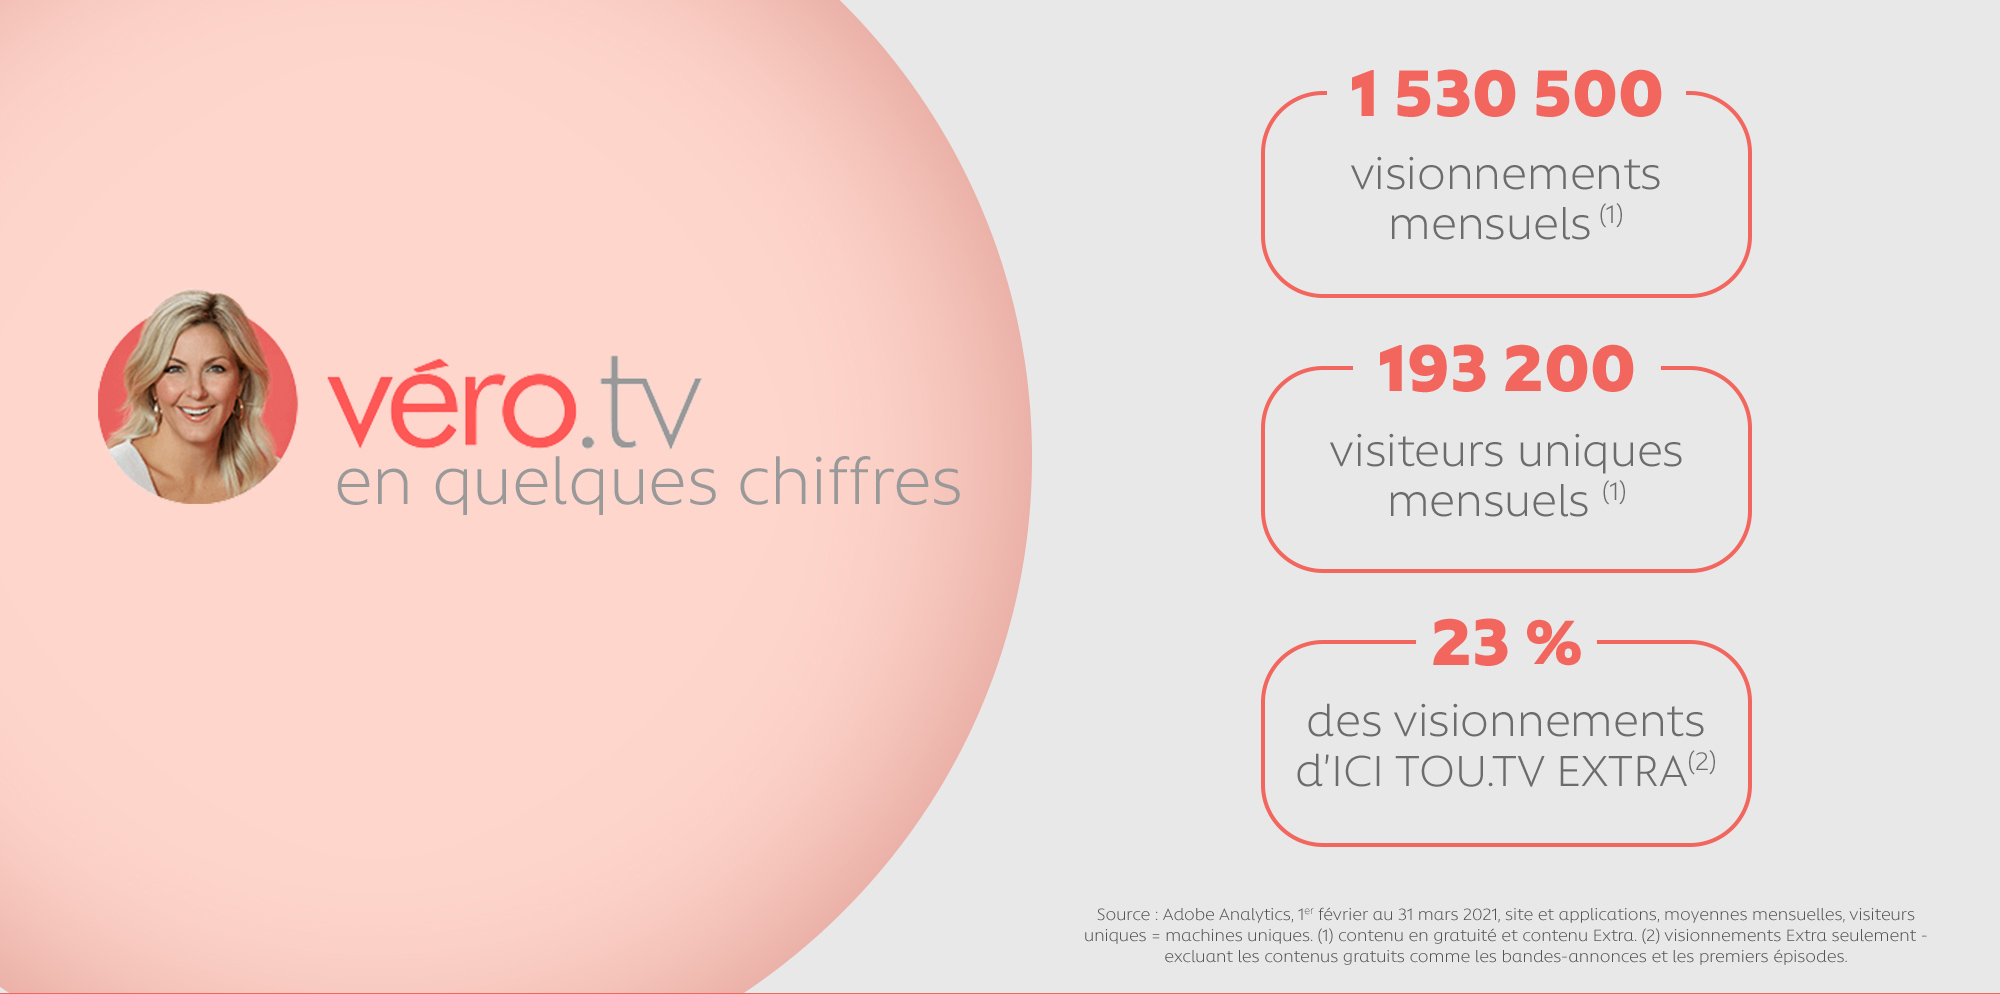 Véro.tv en quelques chiffres : 1 530 500 visionnements mensuels, 193 200 visiteurs uniques mensuels et 23 % des visionnements d'ICI TOU.TV EXTRA